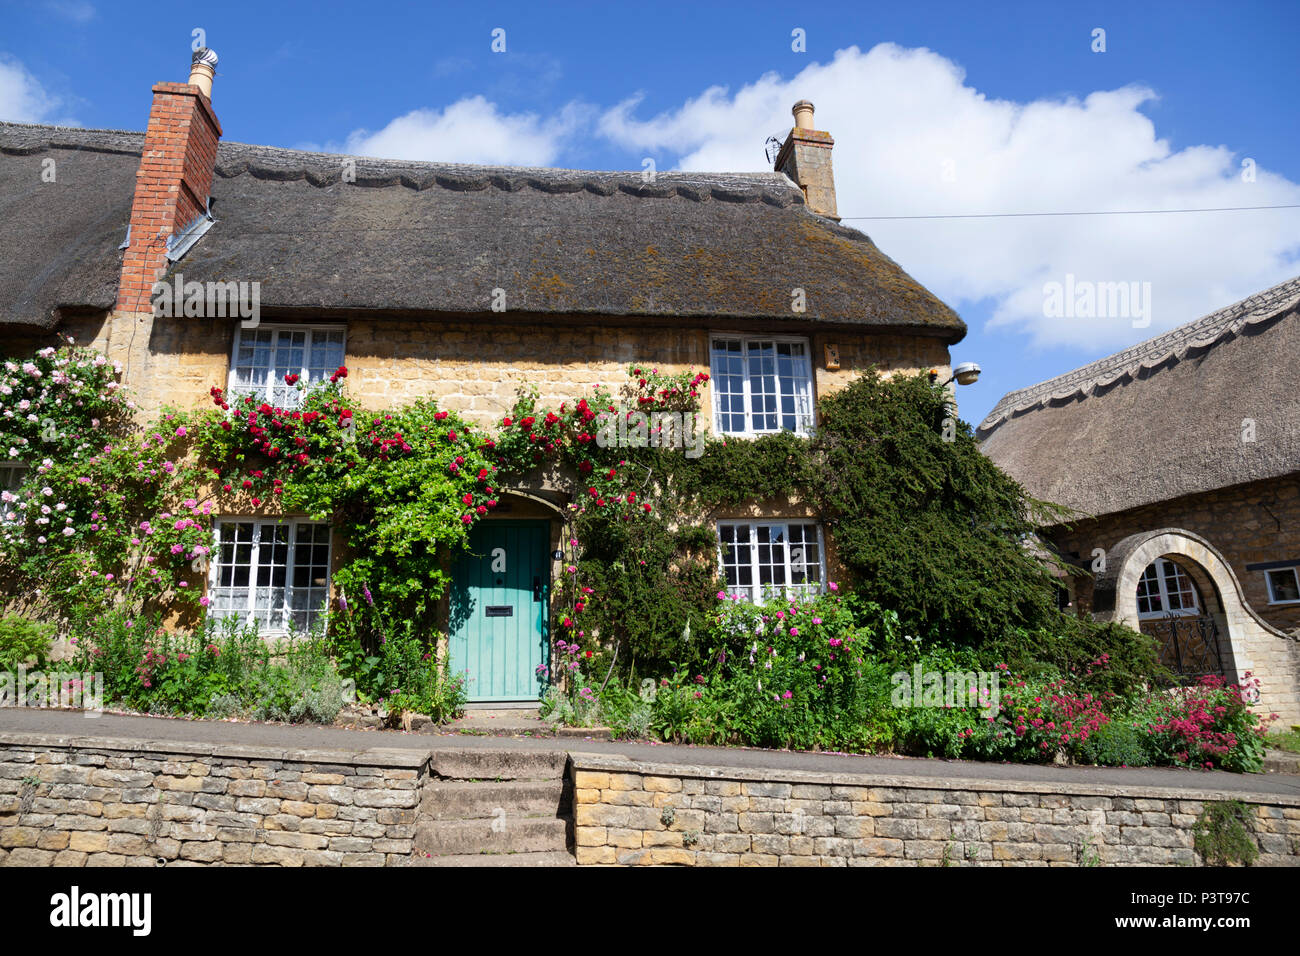 Ricoperto di Rose cottage con tetto in paglia in country village, Ebrington, il Costwolds, Gloucestershire, England, Regno Unito, Europa Foto Stock